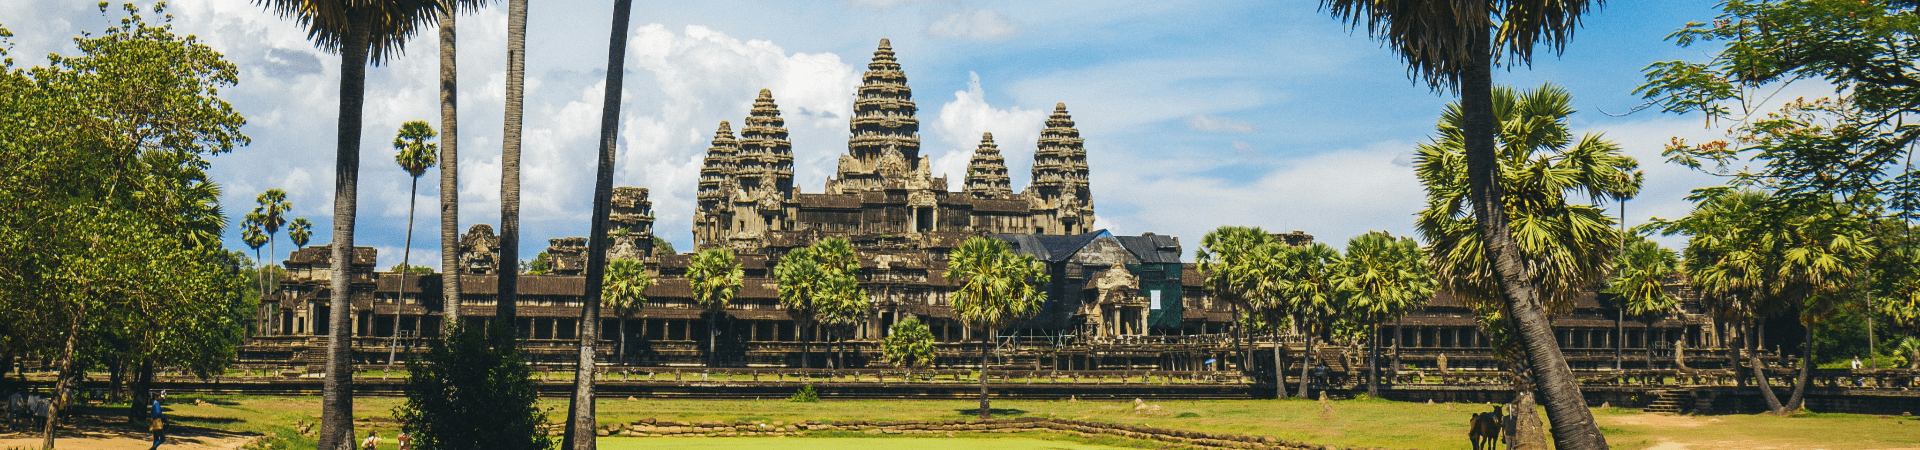 Trek to Angkor Wat